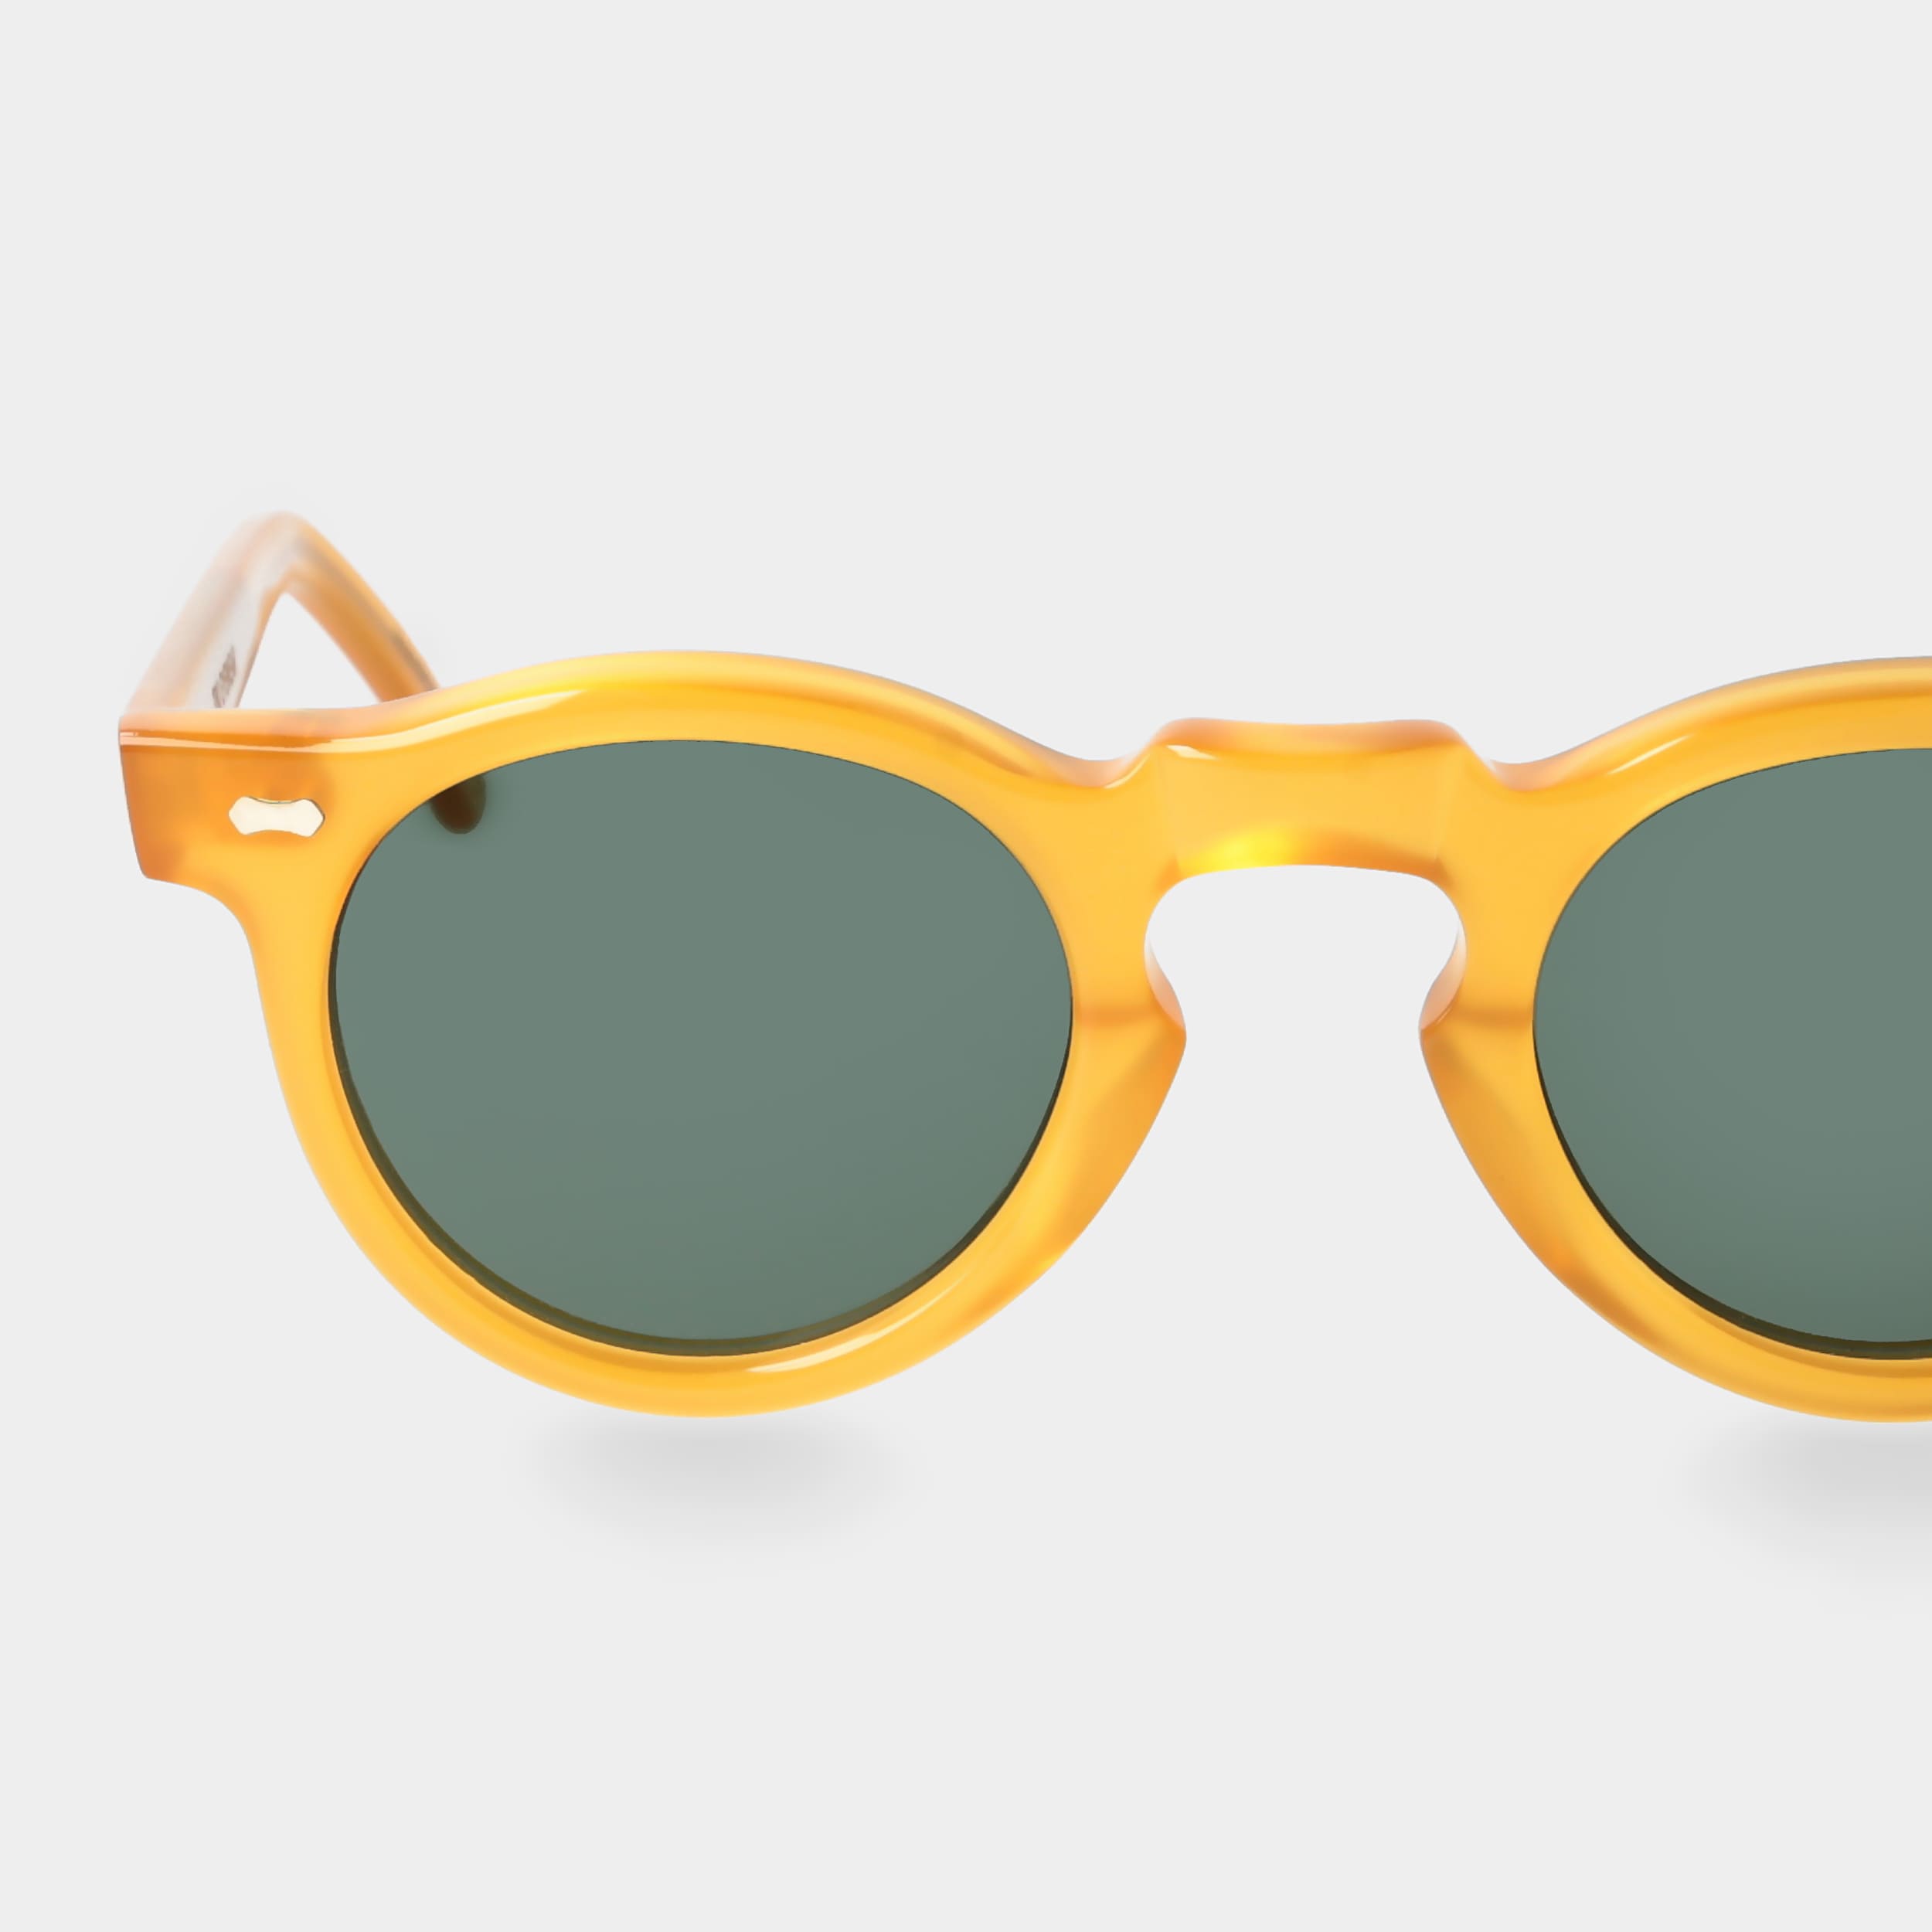 Eyewear Gläsern: Welt TBD mit Gelbe Sonnenbrille grünen |